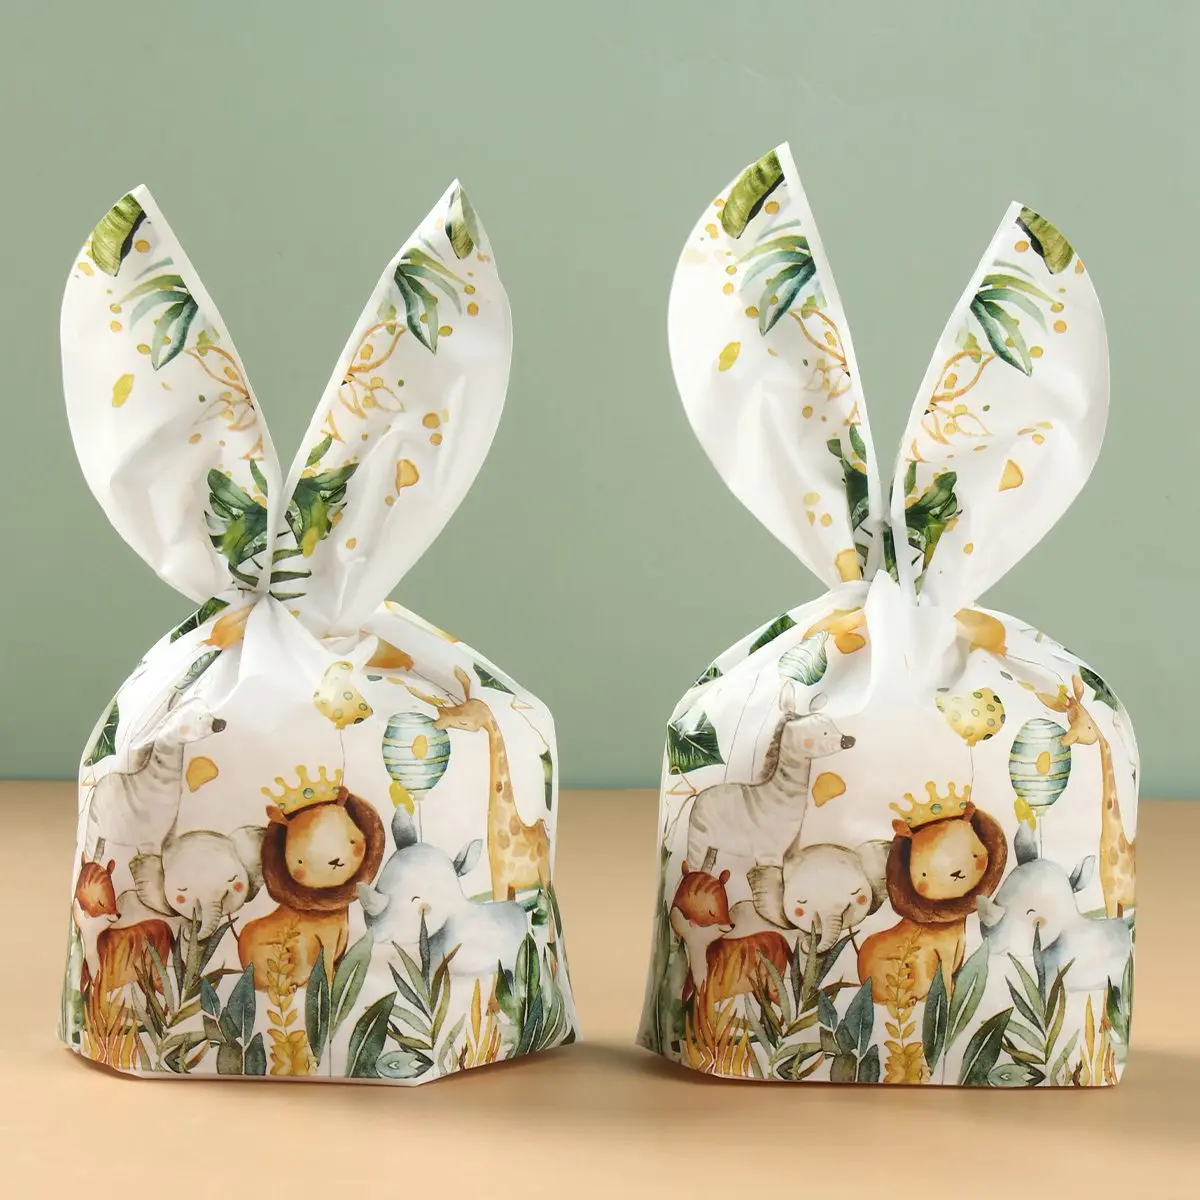 50шт джунгли животное Кролик подарочные пакеты конфеты печенье упаковка мешок день рождения поставки дети ребенок душ свадебные DIY подарочные пакеты